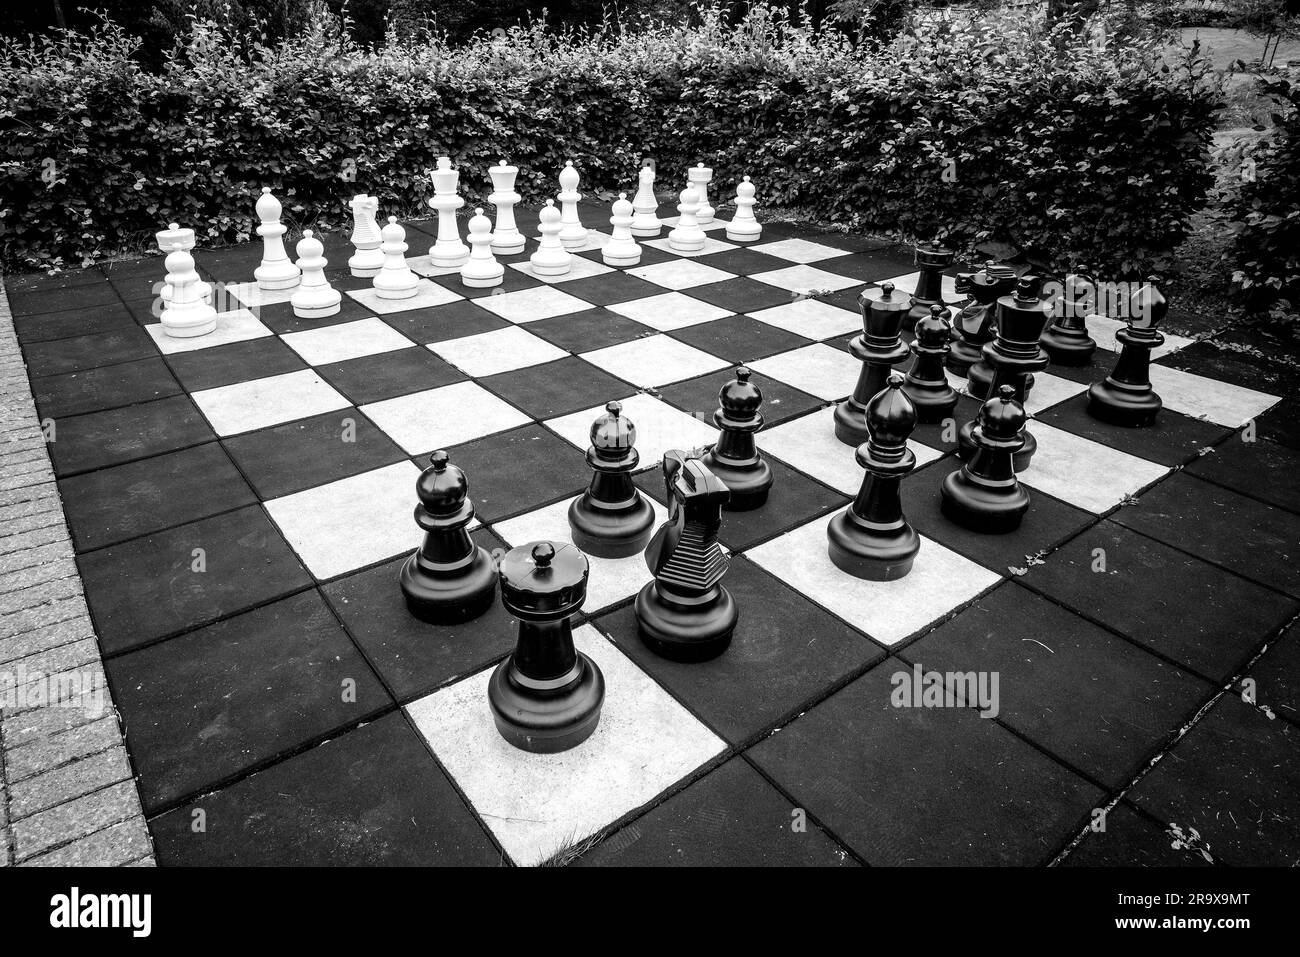 Jeu d'échecs avec de gros morceaux dans une version d'extérieur du jeu classique en noir et blanc Banque D'Images